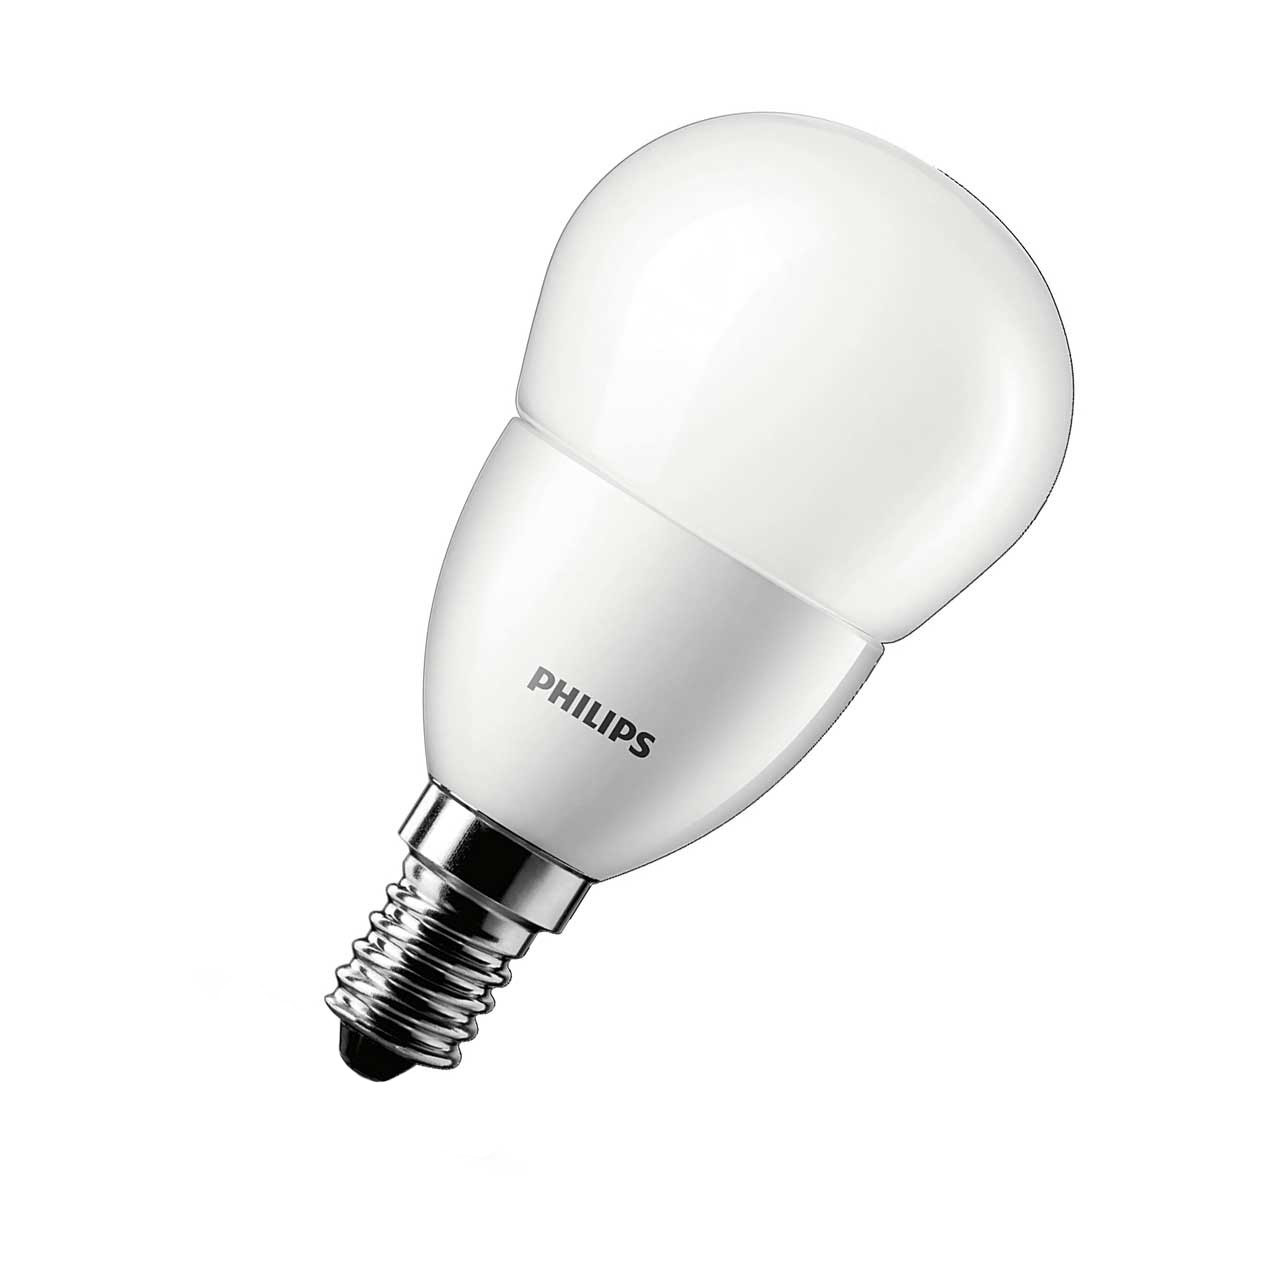 Bulb LED 1,8W (205lm) G4 - Philips